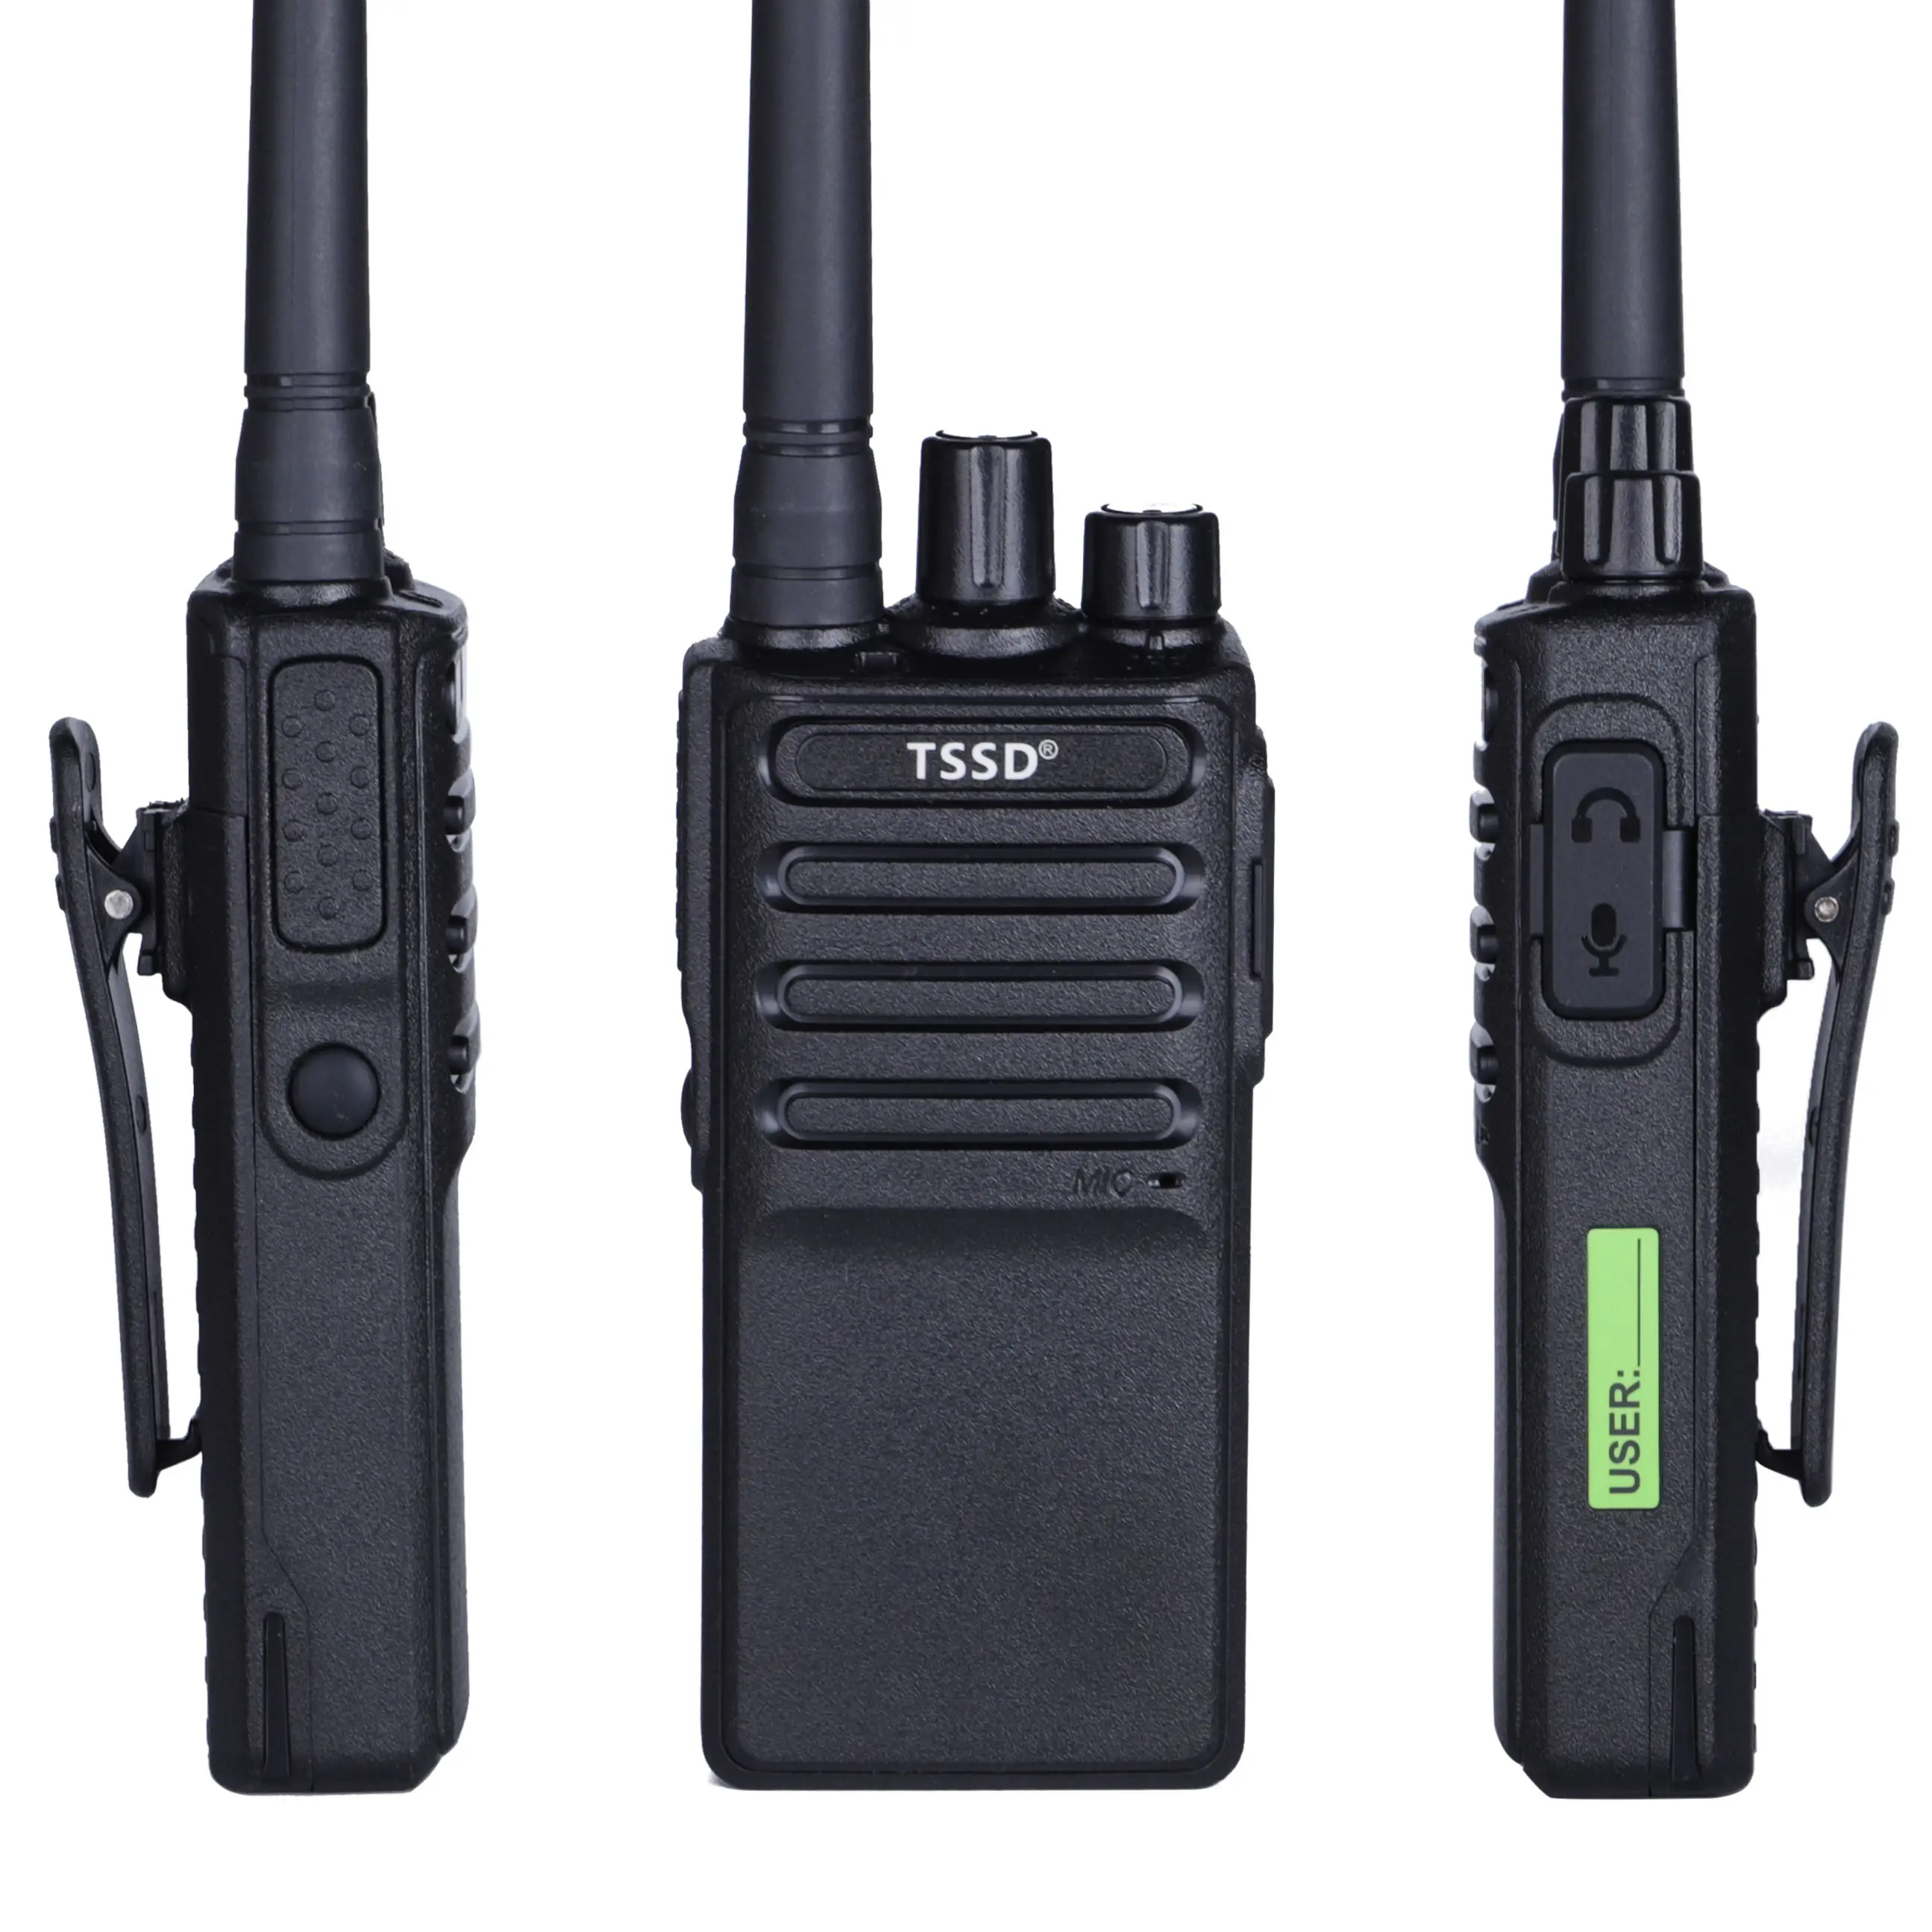 Tssd TS-K68 yeni varış UHF MINI interkom iki yönlü Poc mini kullanışlı radyolar şarj edilebilir çocuklar cep telefonu açık taşınabilir radyo